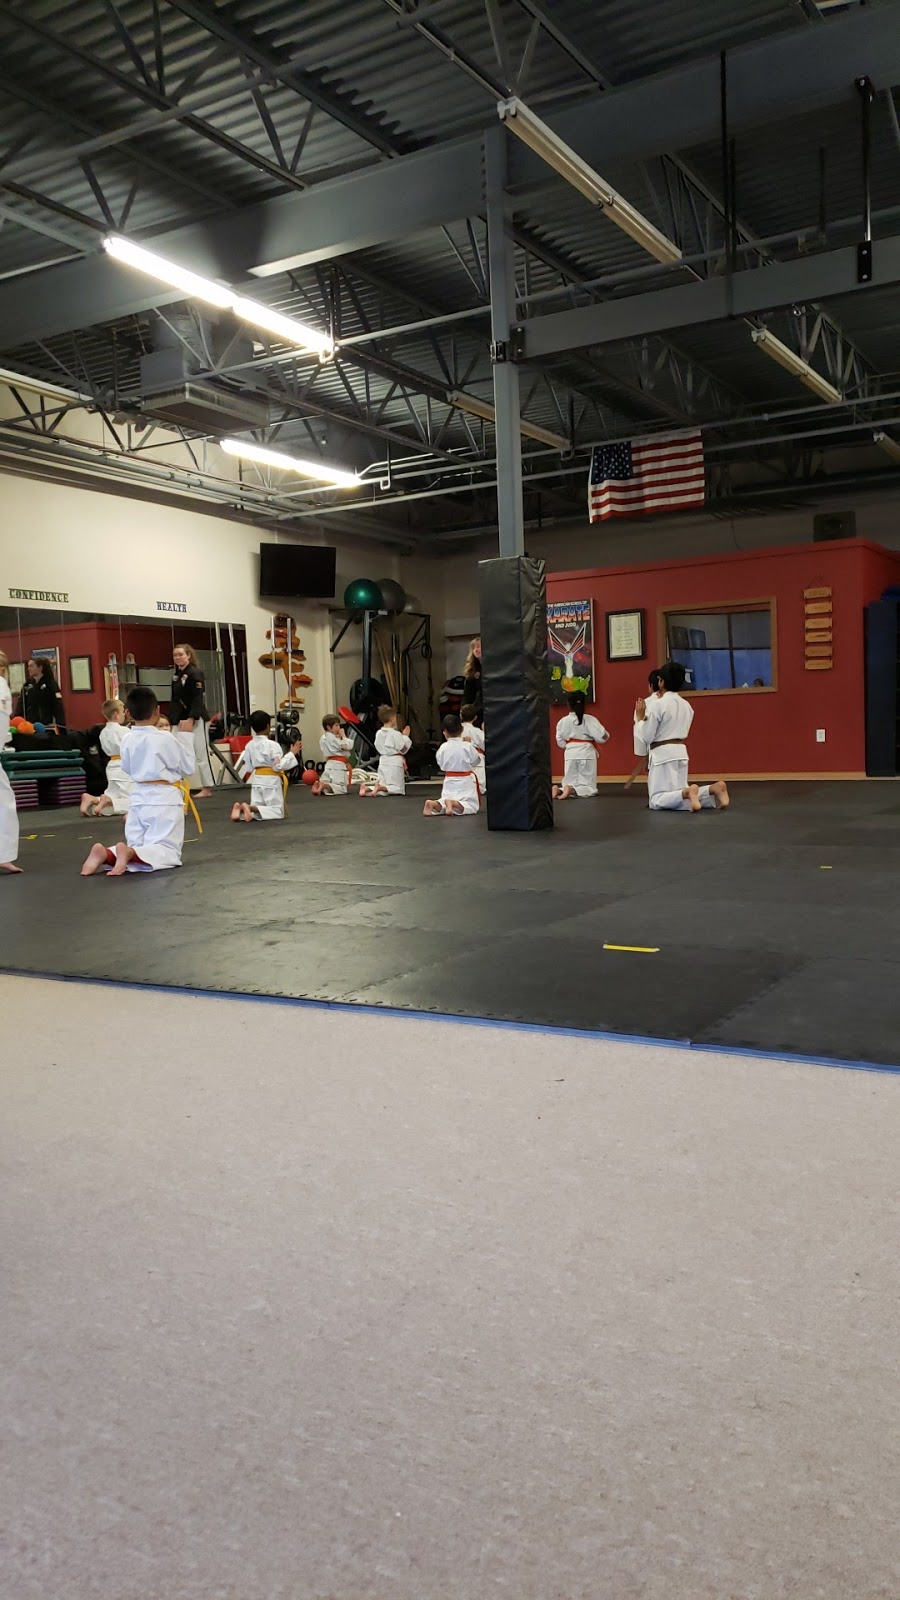 American School of Karate & Judo | 3203 N 204th St, Elkhorn, NE 68022, USA | Phone: (402) 493-0279